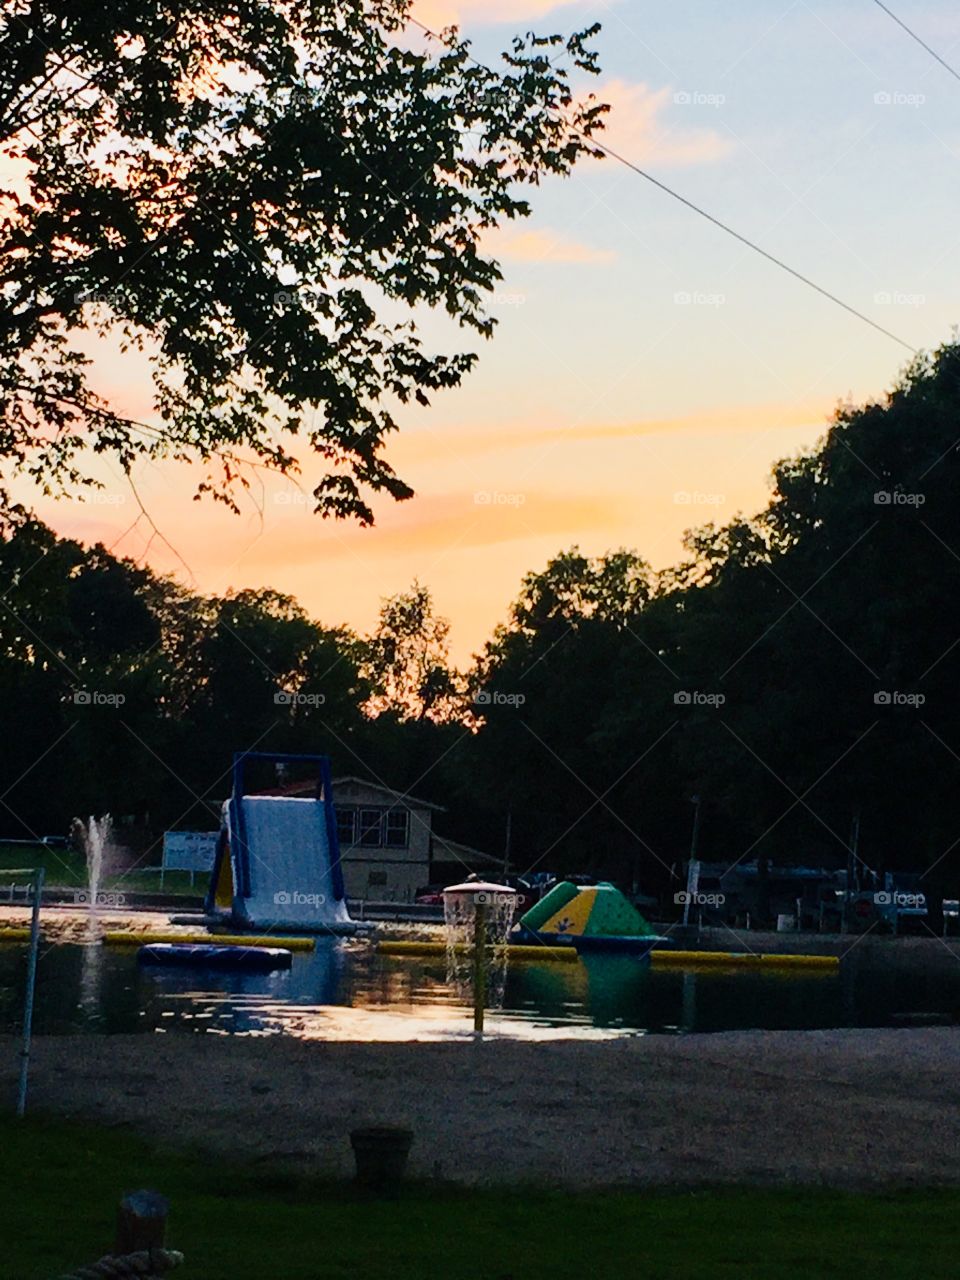 Sunset at the lake